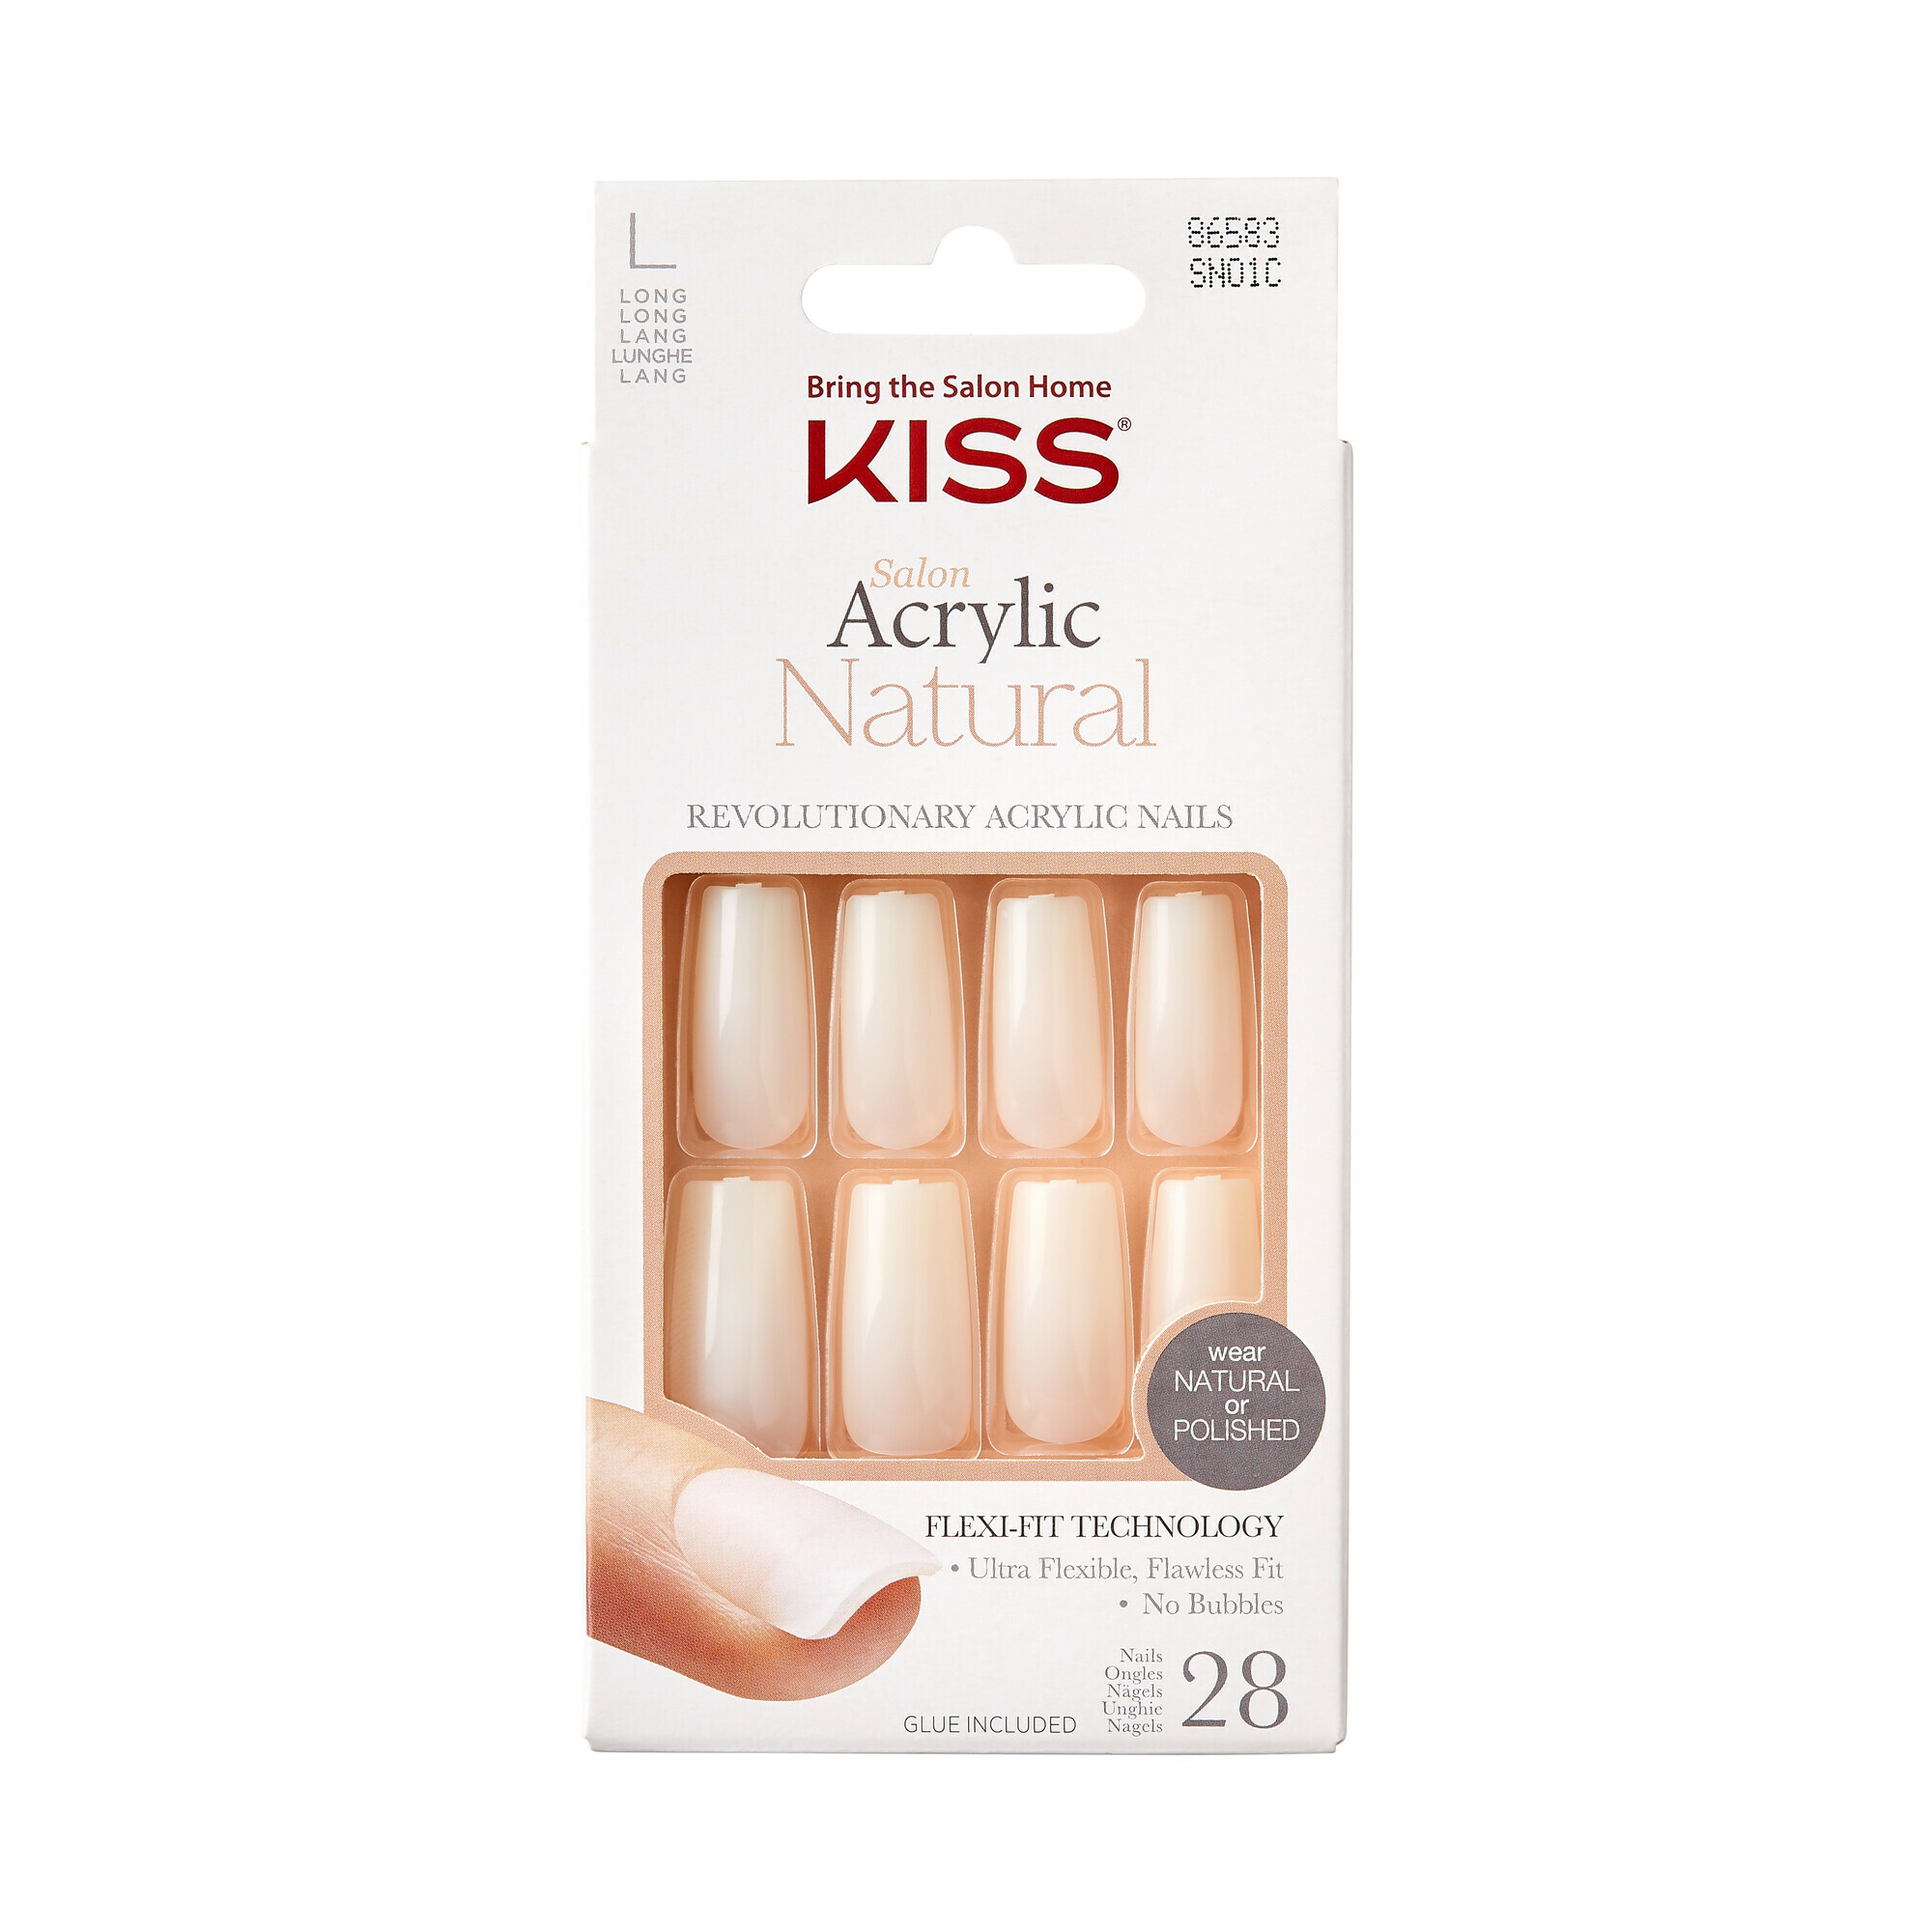 KISS Nalepovacie nechty Salon Acrylic Natura l Nails - Bareskinned 28 ks